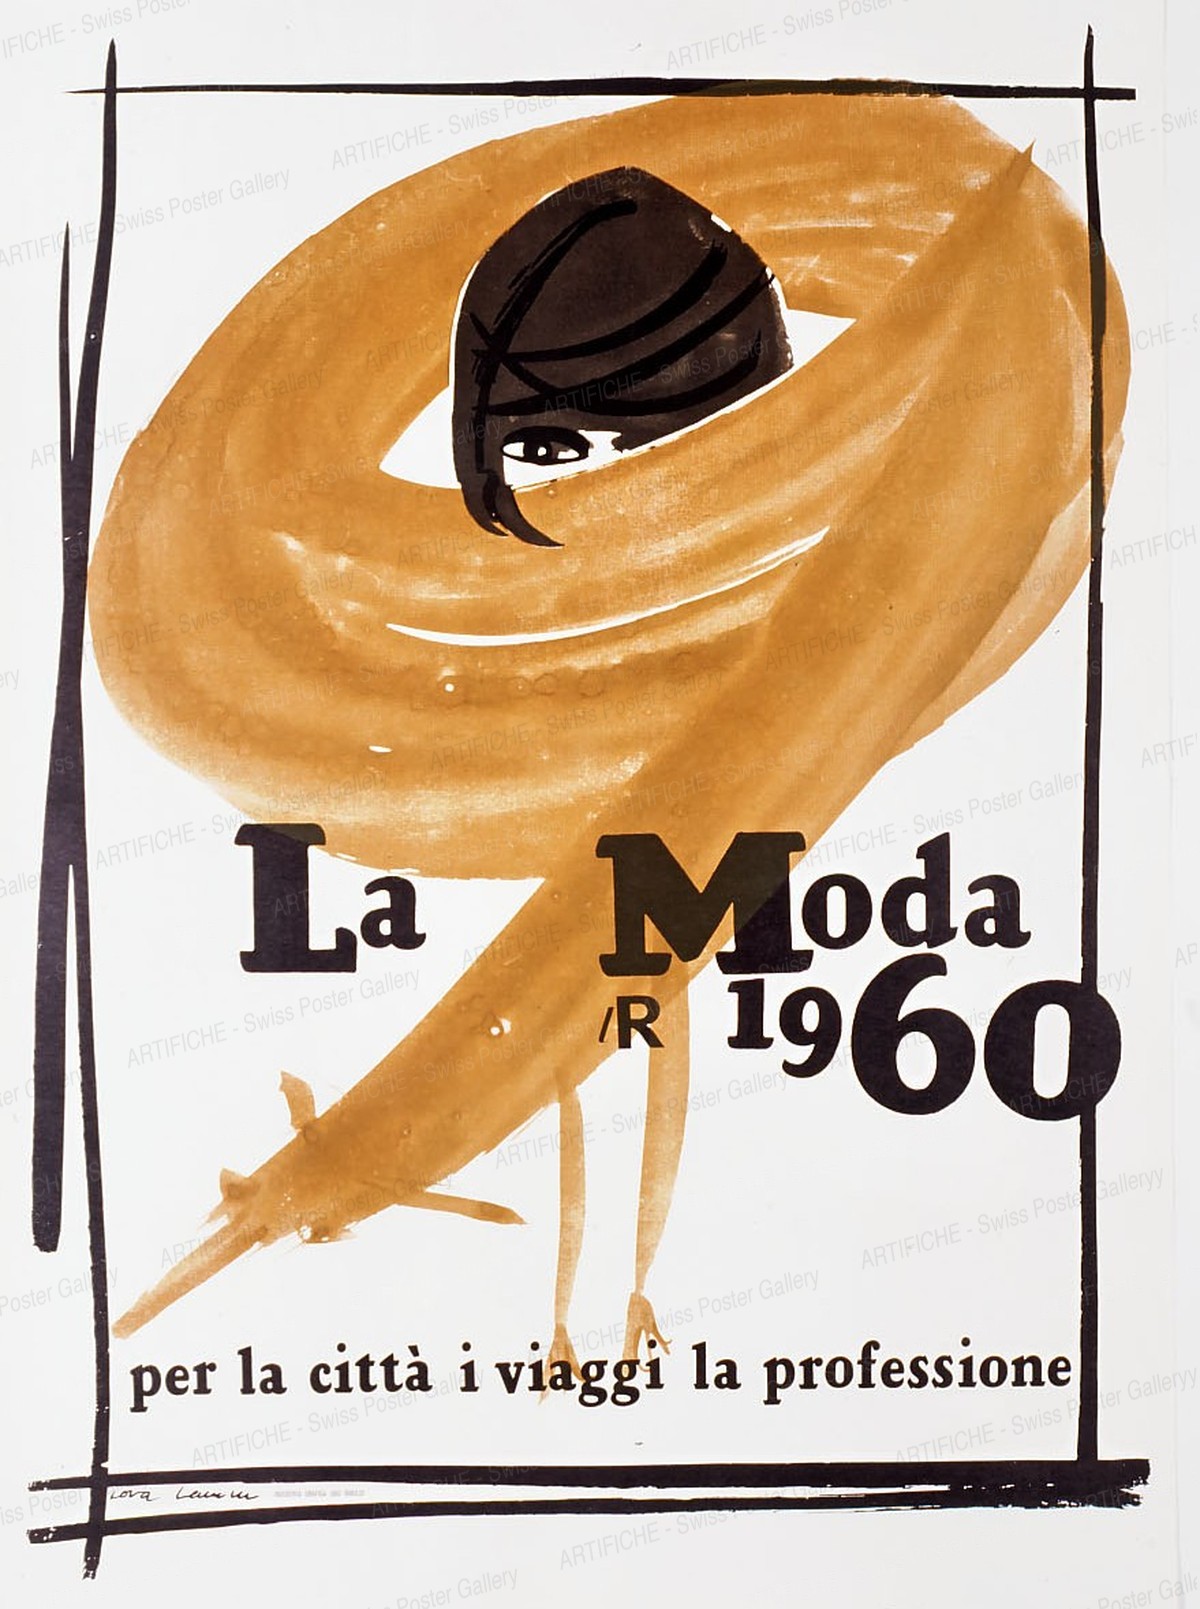 La Moda 1960 per la città i viaggi la professione – La Rinascente, Lora Lamm